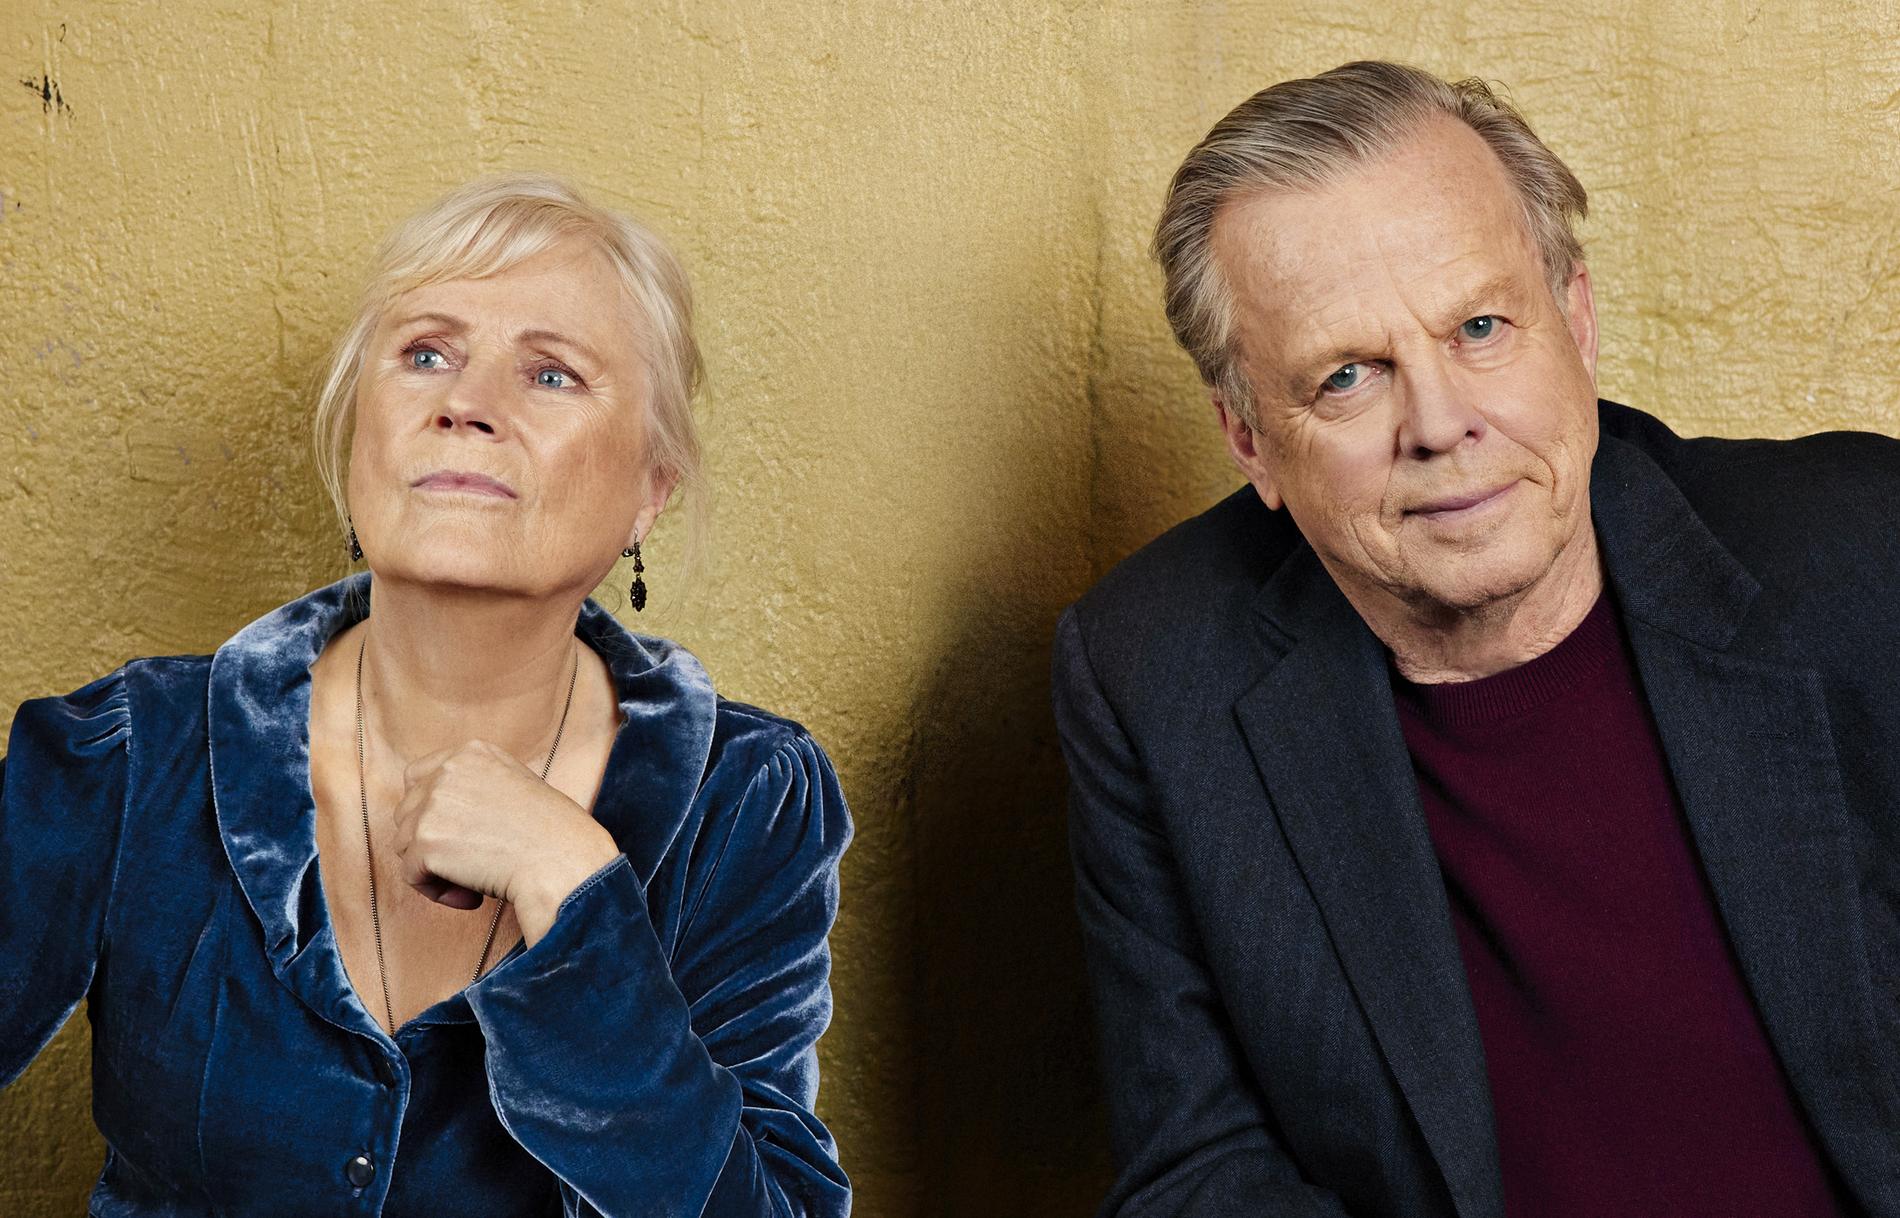 Ulla Skoog och Krister Henriksson spelar i pjäsen "Kärleksbrevet" på Scalateatern. Pressbild.